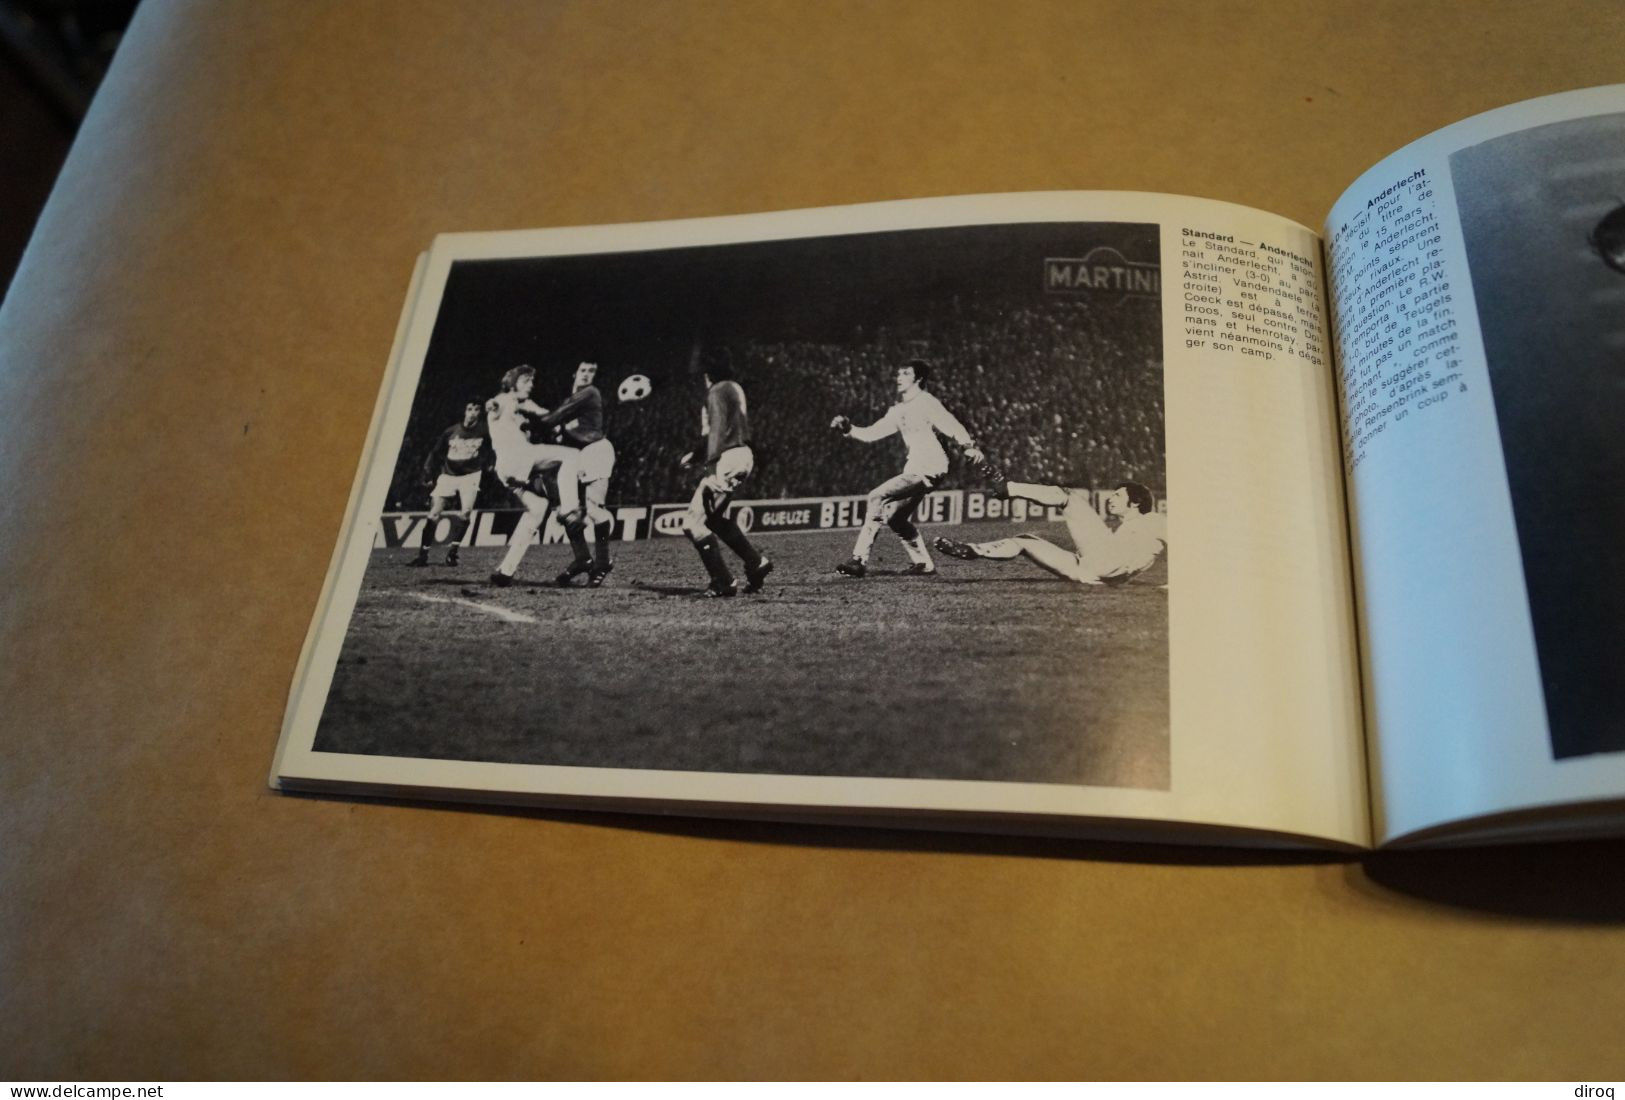 RARE ouvrage Football saison 1974 -1975 ,complet,photos Chocs,22,5 Cm. sur 14,5 Cm.